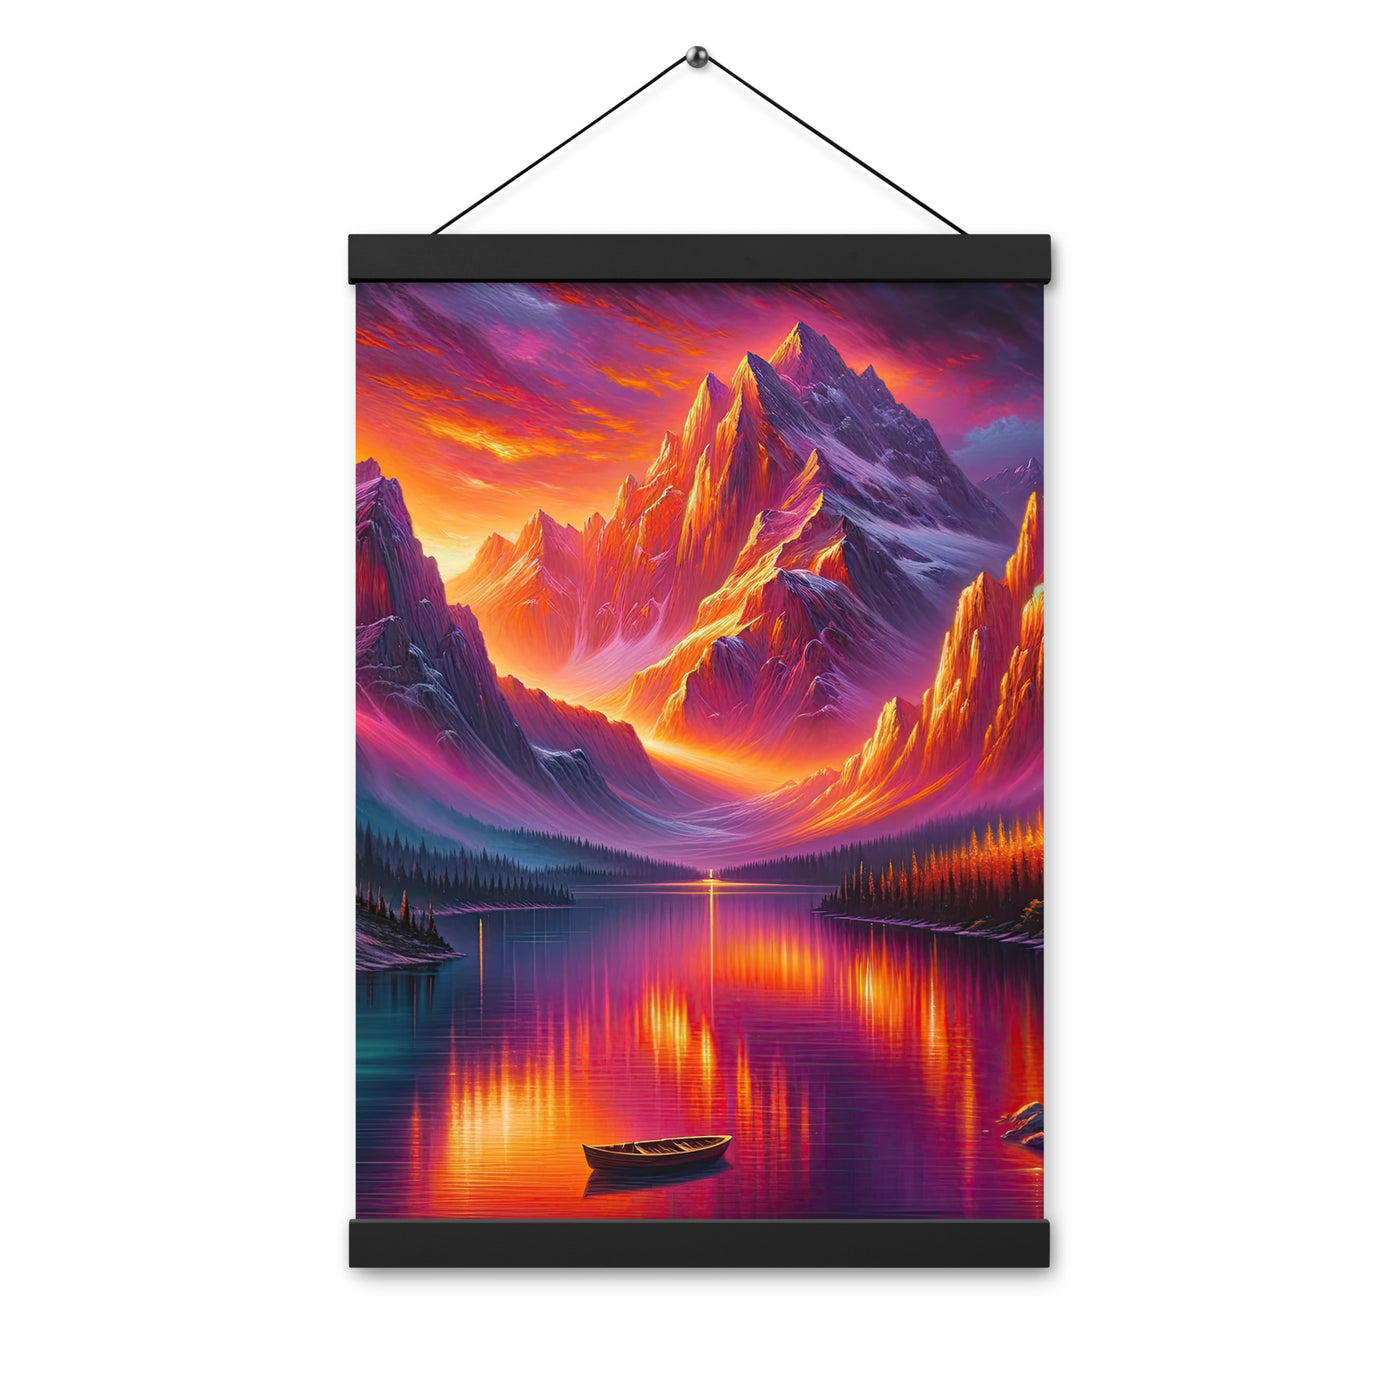 Ölgemälde eines Bootes auf einem Bergsee bei Sonnenuntergang, lebendige Orange-Lila Töne - Premium Poster mit Aufhängung berge xxx yyy zzz 30.5 x 45.7 cm